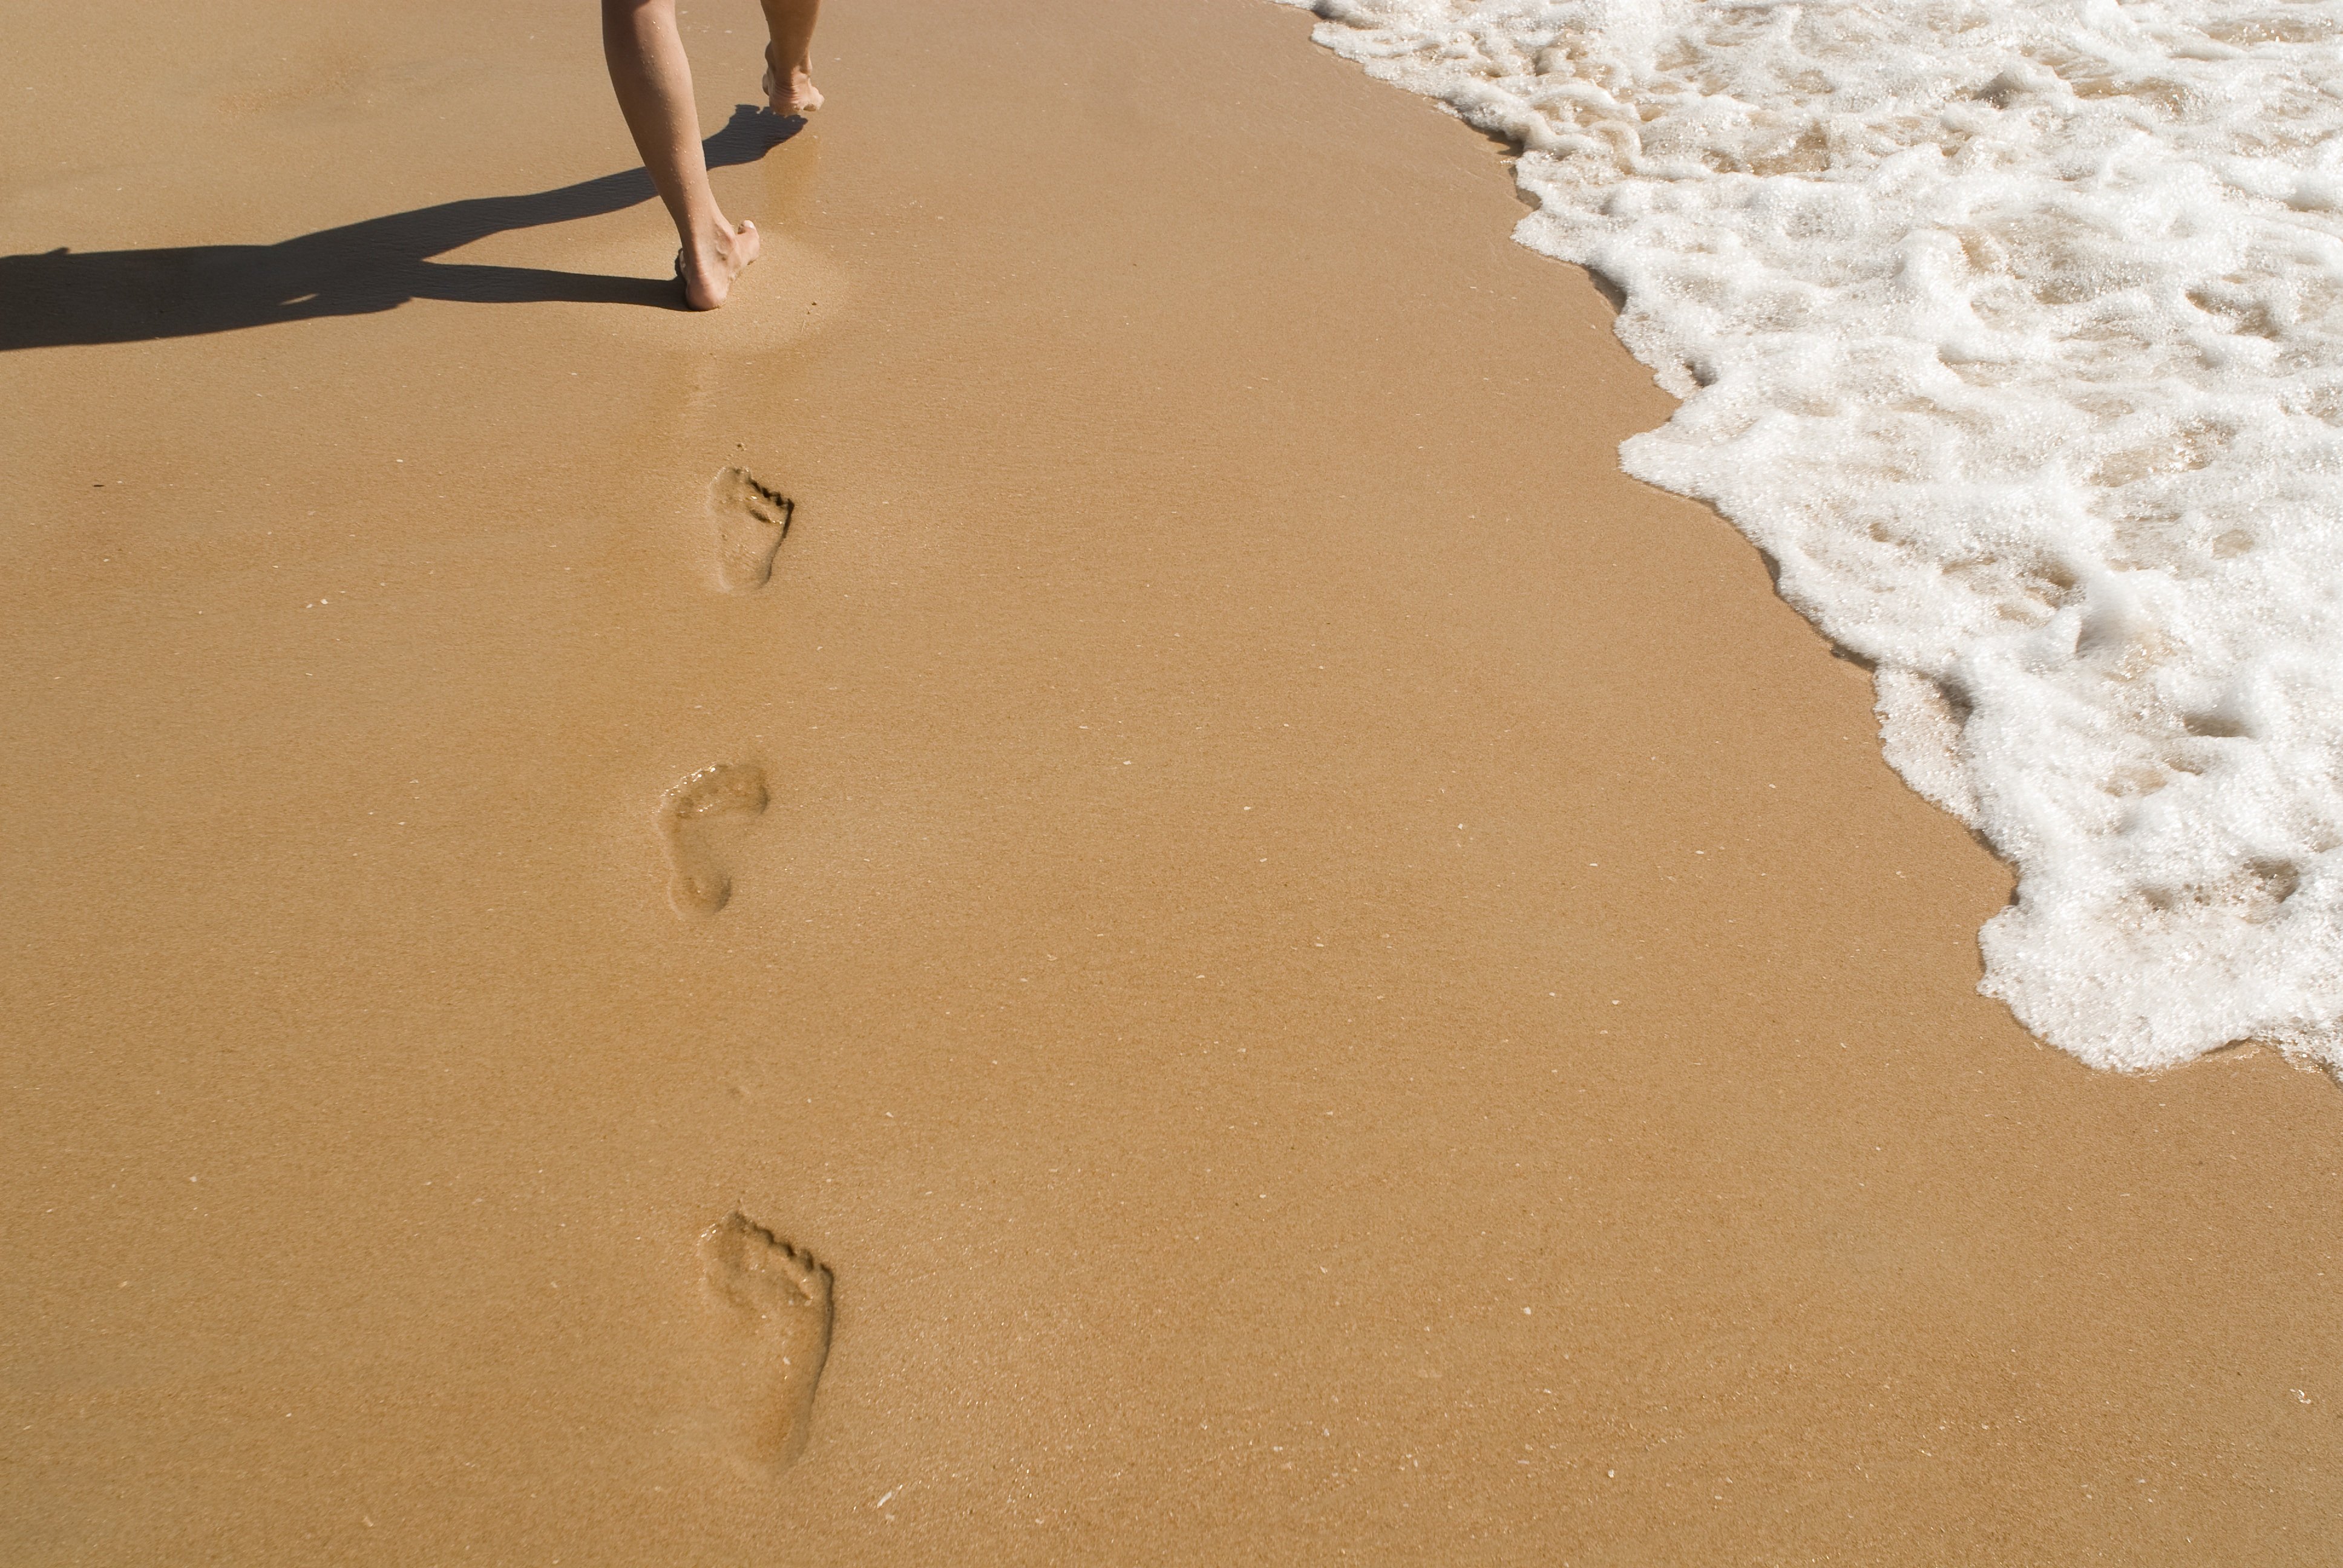 Текст следы на песке. Следы на песке. Следы человека на песке. Пляж песок. След стопы на песке.